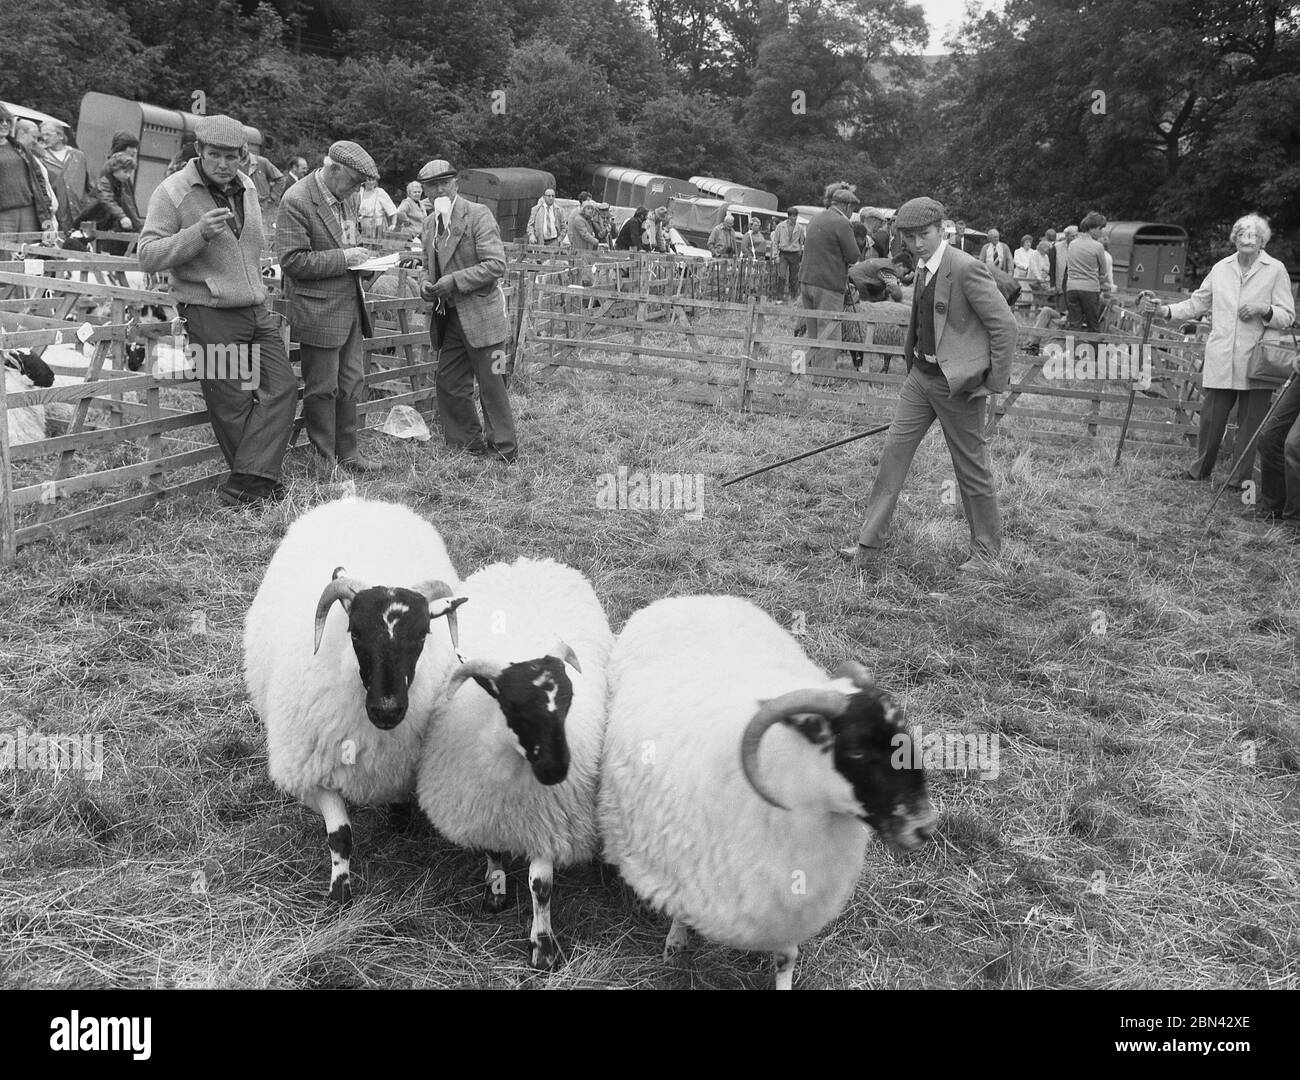 Anni ottanta, un giovane che giudica il bestiame in una mostra agricola a Farndale, nel Nord Yorkshire. Indossando il look country di una giacca e cravatta e cappellino in tessuto con canna ispeziona tre pecore nere in una penna o recinzione. Il Farndale Agricultural Show, che presenta abilità agricole, attrezzature e razze speciali di animali, è un evento locale popolare, che nel 2006 ha celebrato la sua centesima edizione. Foto Stock